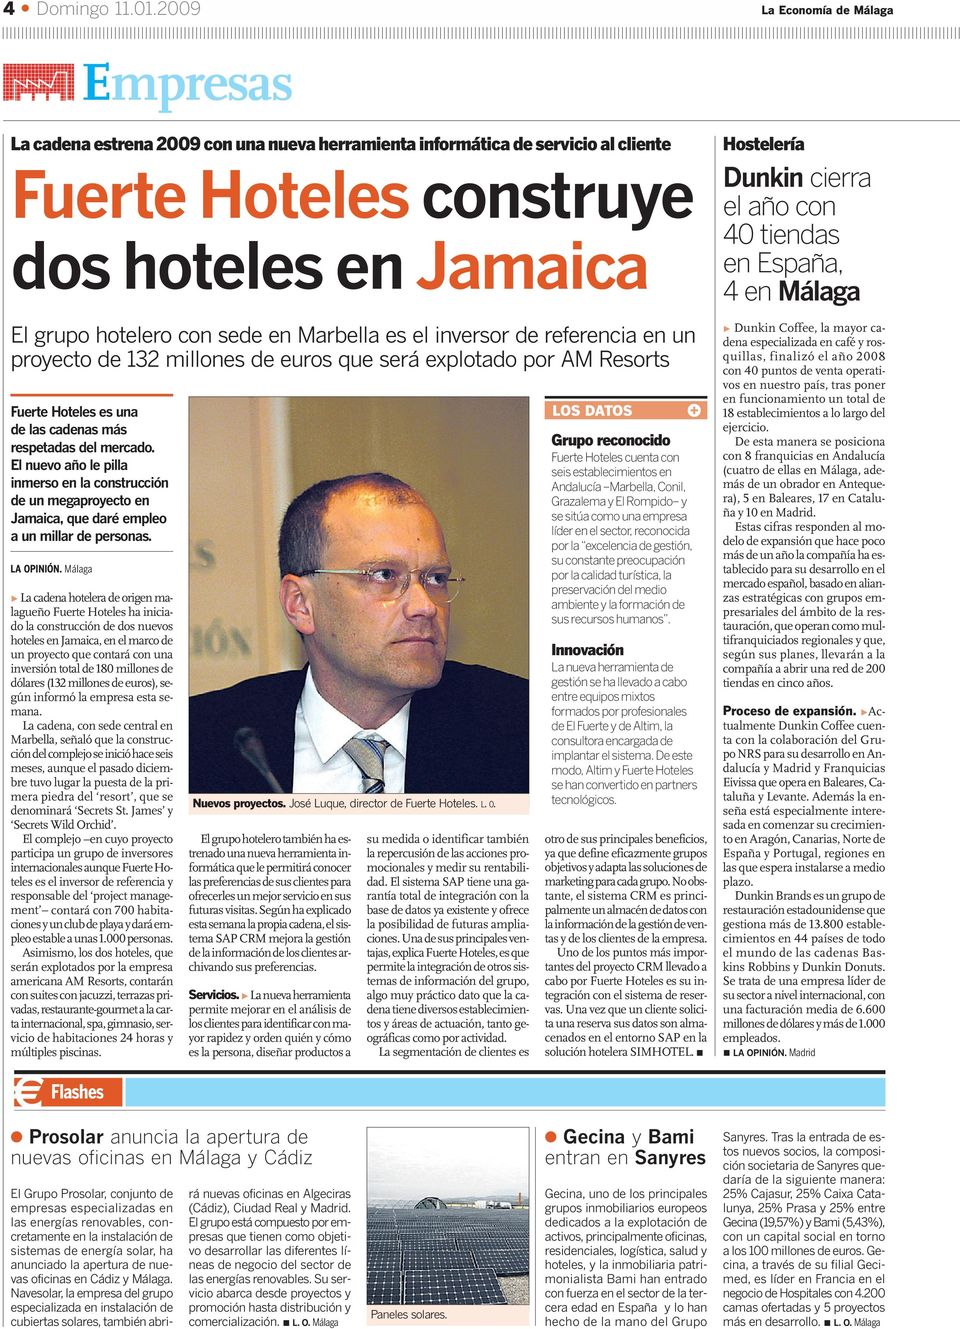 Marbella es el inversor de referencia en un proyecto de 132 millones de euros que será explotado por AM Resorts Fuerte Hoteles es una de las cadenas más respetadas del mercado.